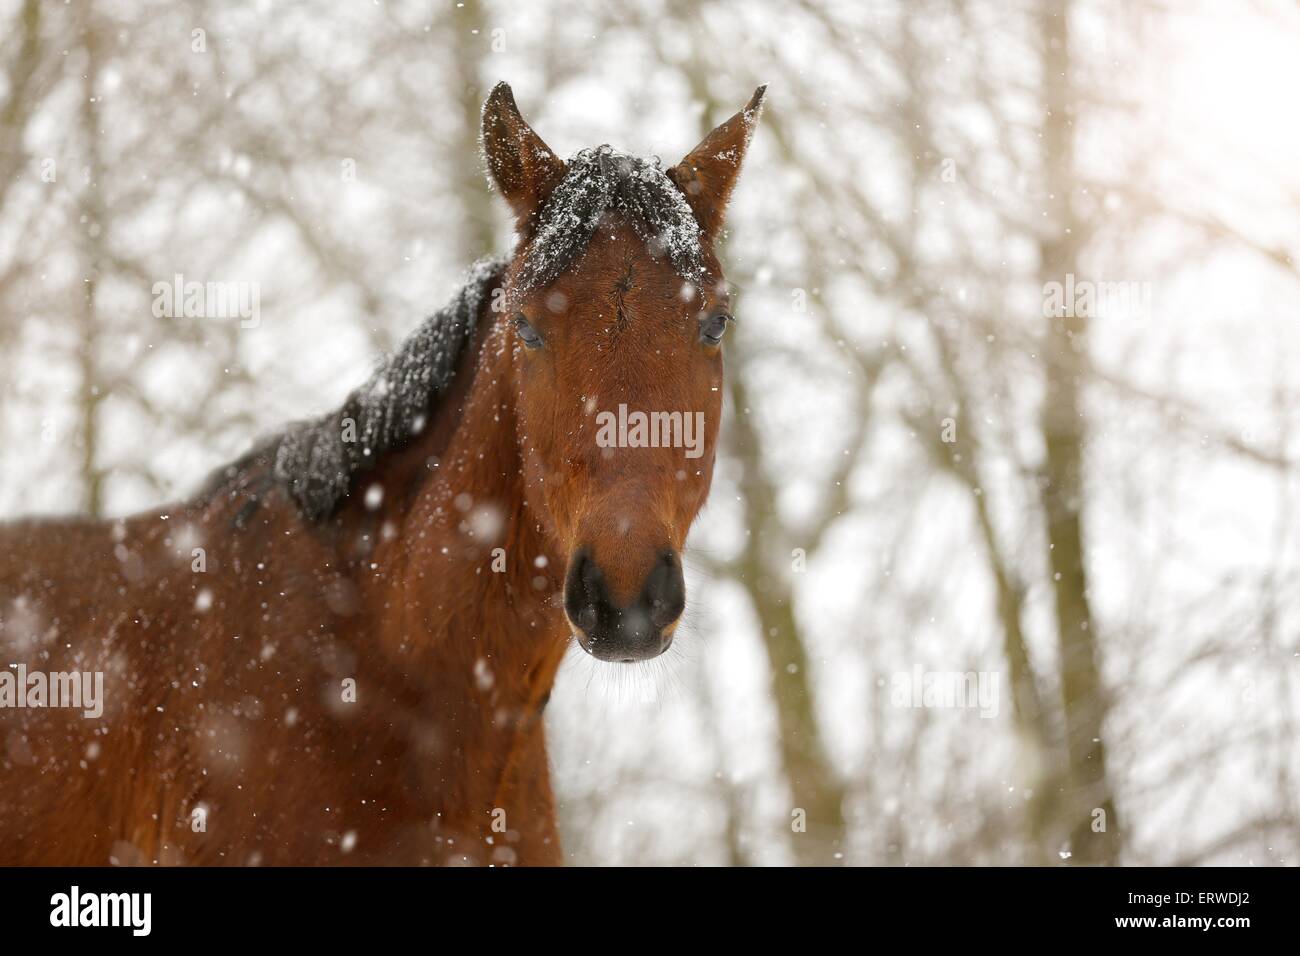 Cheval brun dans la neige de conduite Banque D'Images